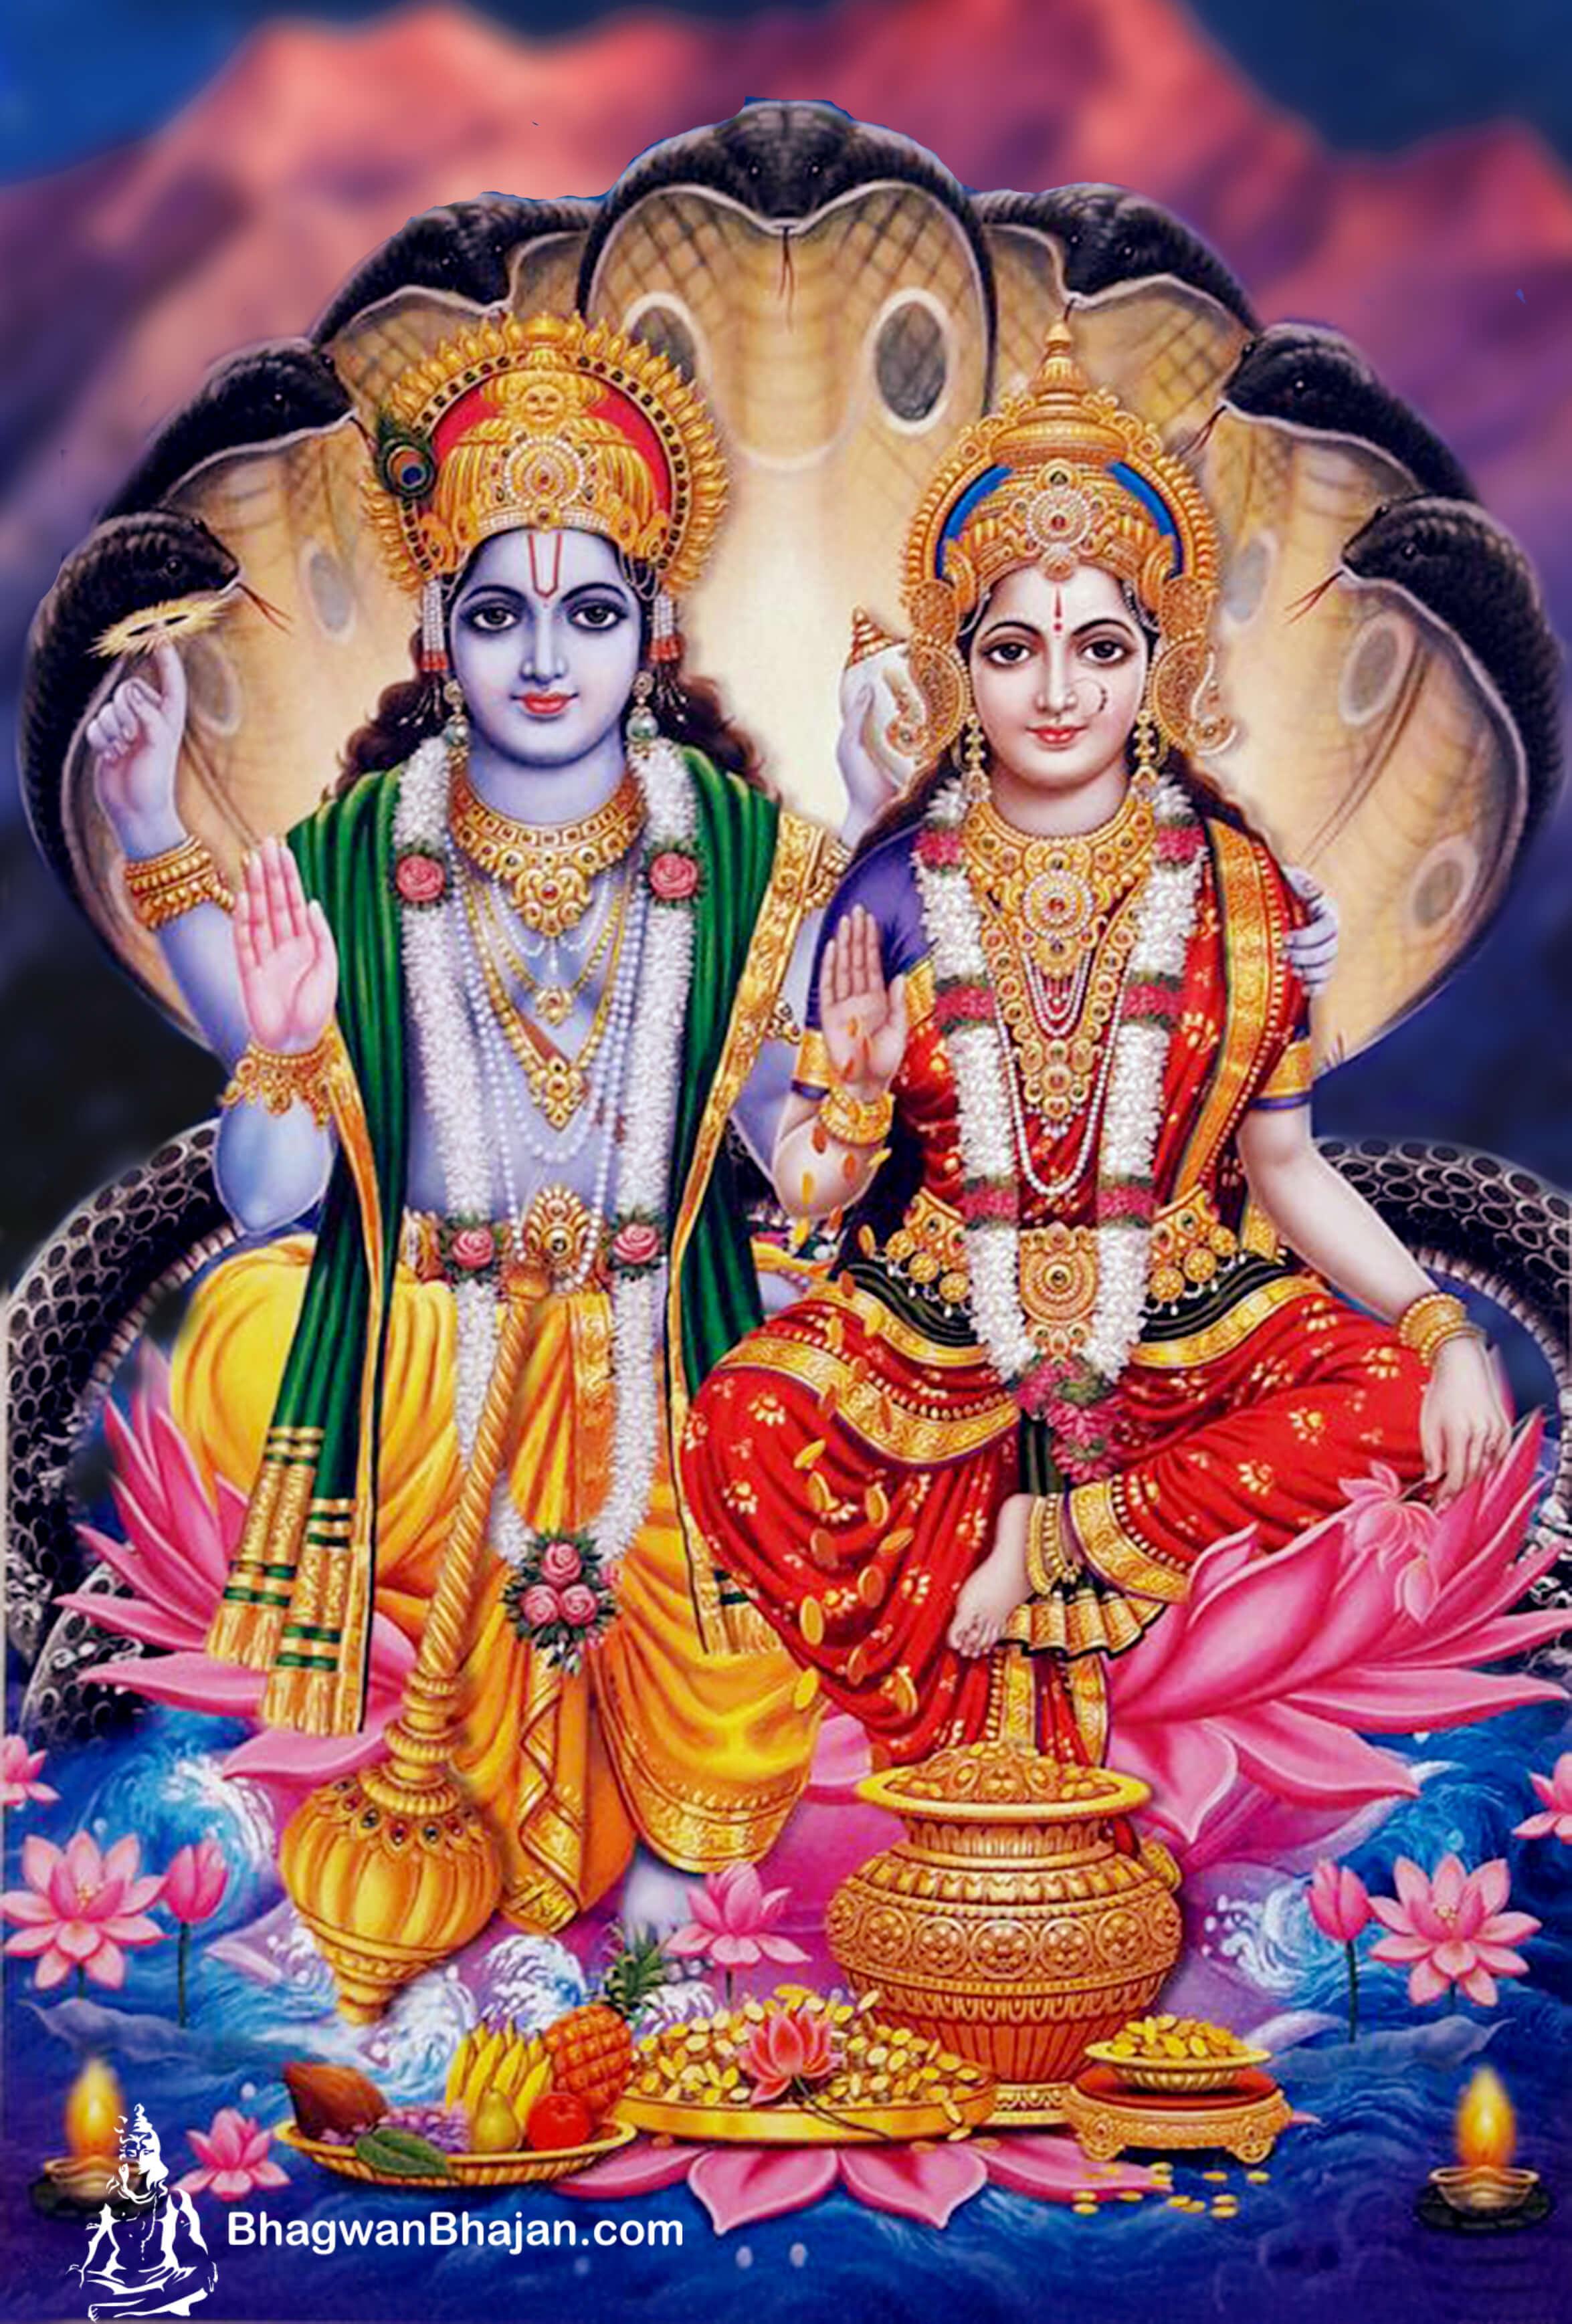 Download Free HD Wallpaper & Image of Bhagwan Vishnu. Lord